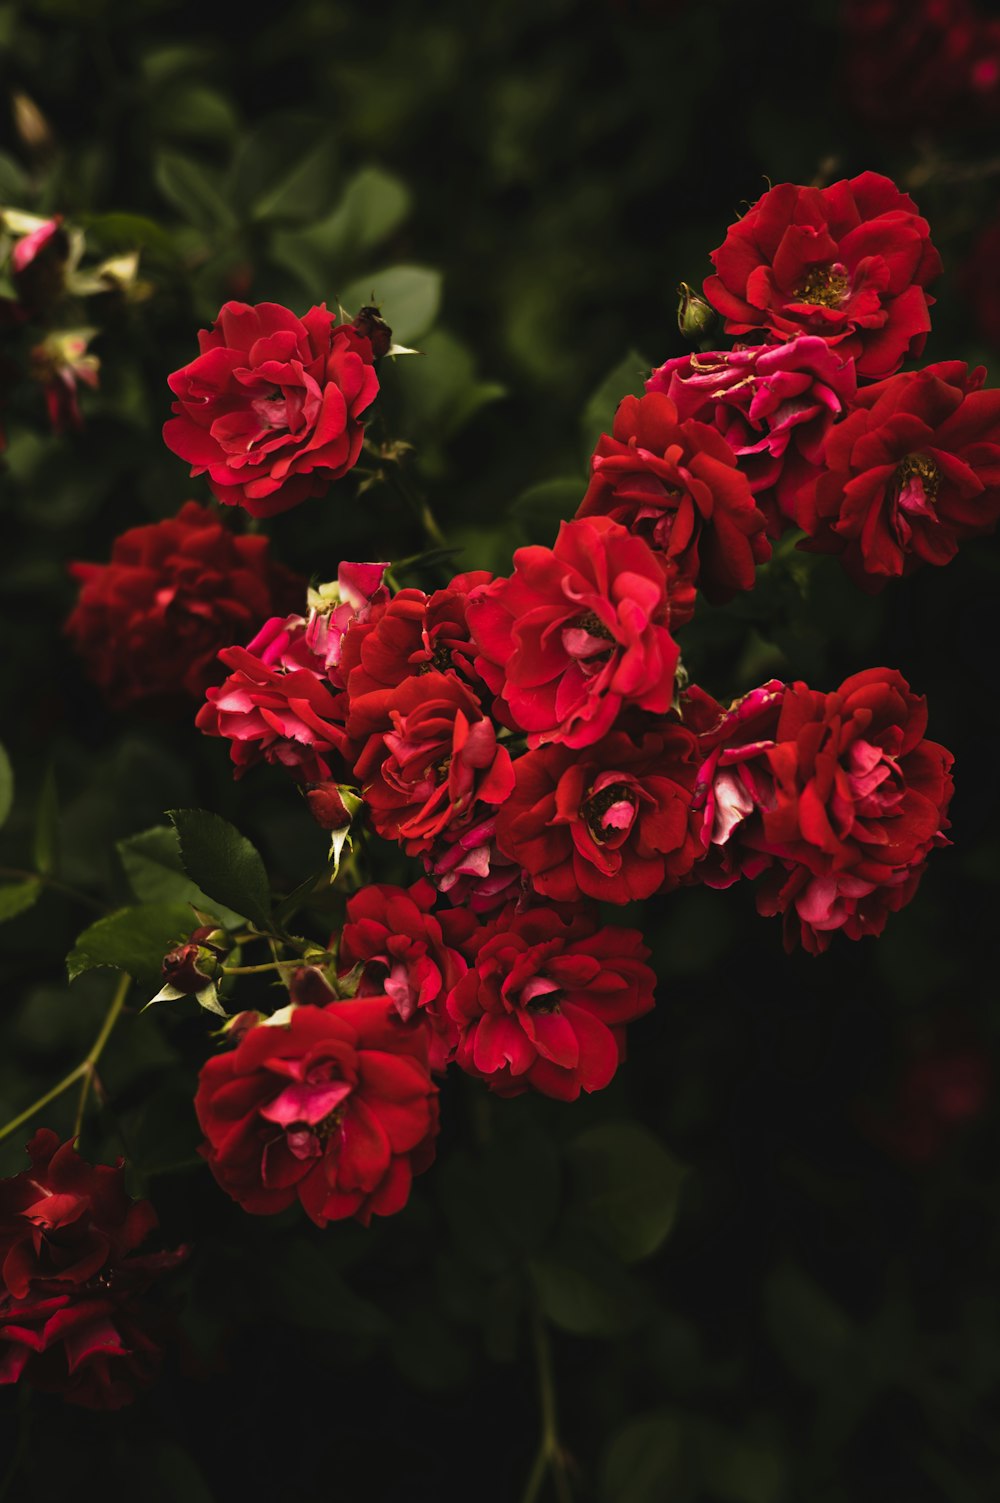 Hoa đỏ là một loại hoa đặc biệt, thể hiện sự lãng mạn và sức sống. Với họa tiết hoa đỏ, bức tranh sẽ trở nên rất đẹp mắt và có giá trị thẩm mỹ cao.